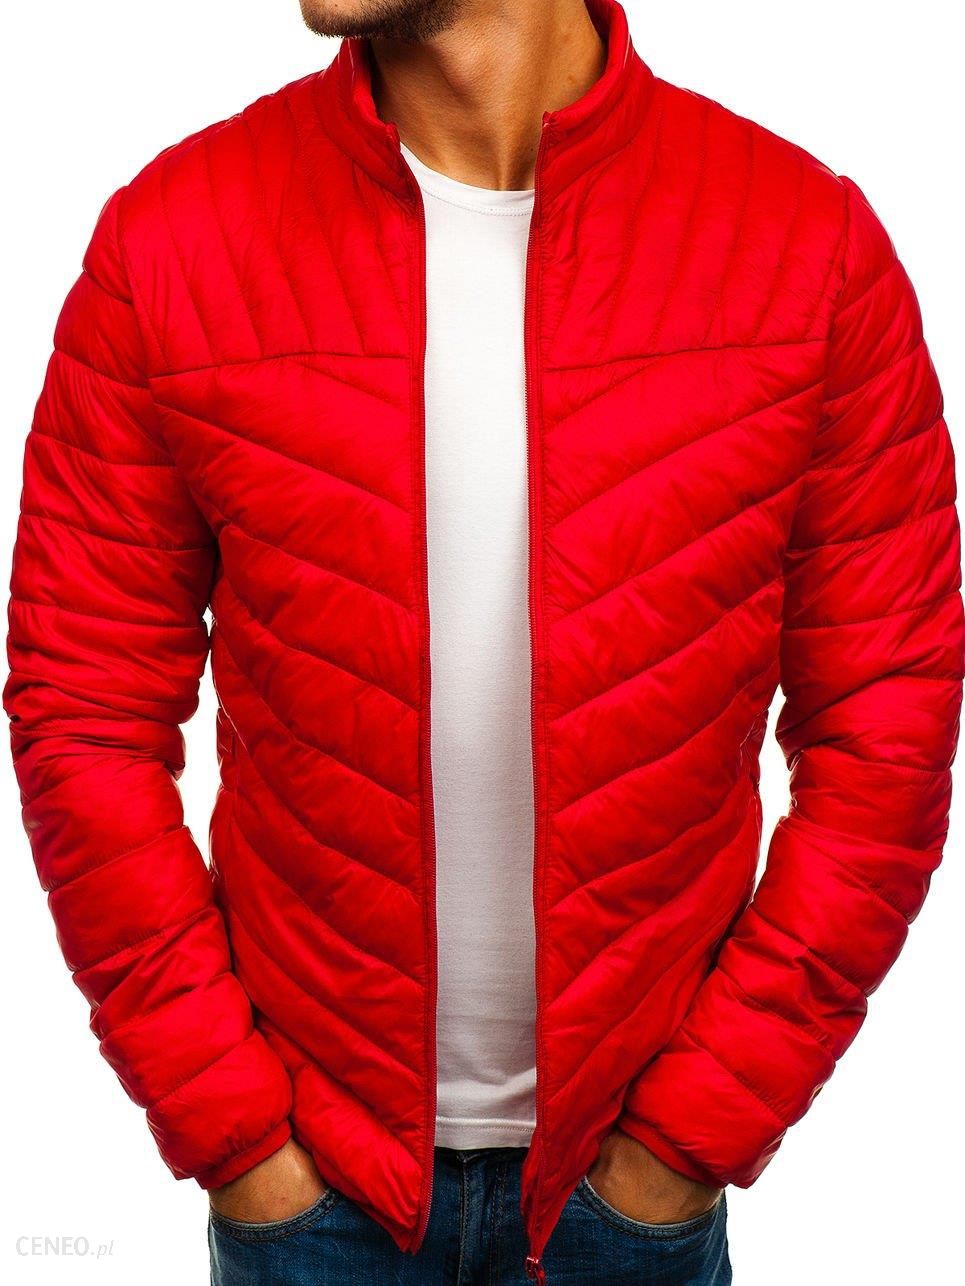 Красные куртки стеганные мужские. Куртка мужская демисезонная красная. Красный пуховик мужской. Красная куртка мужская осенняя. Красная куртка мужчины